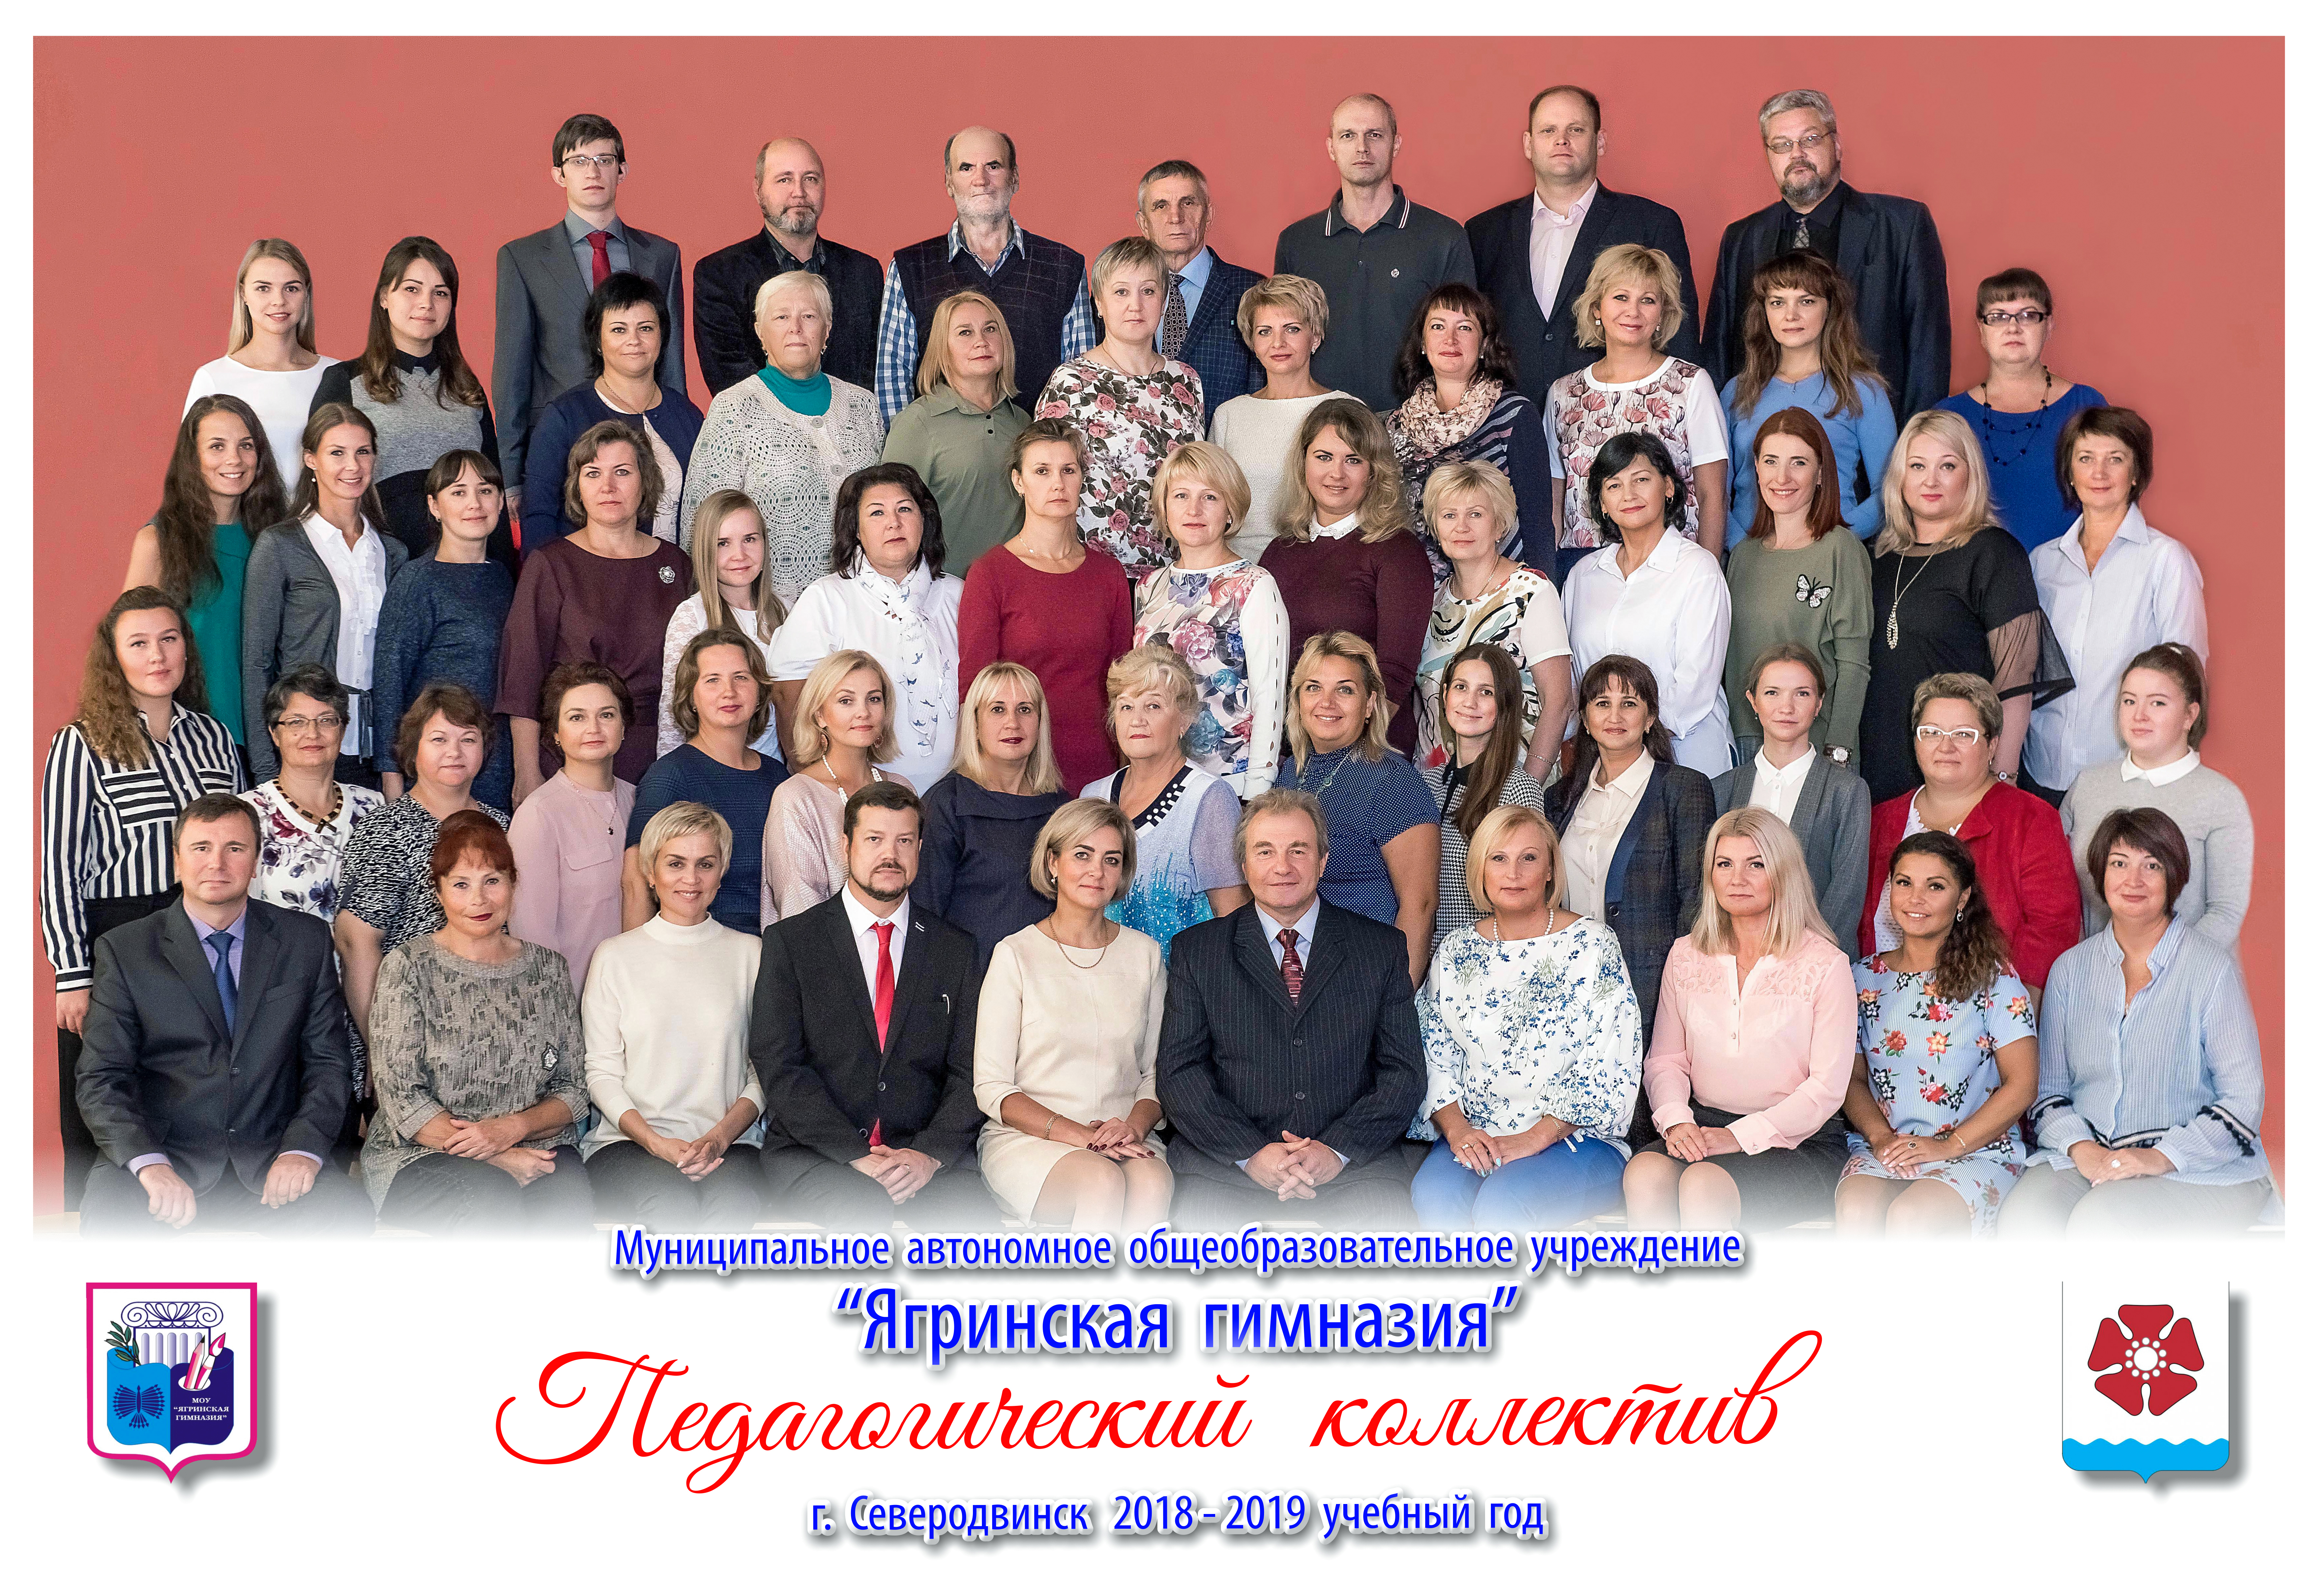 Педколлектив МАОУ "Ягринская гимназия" 2016 г.